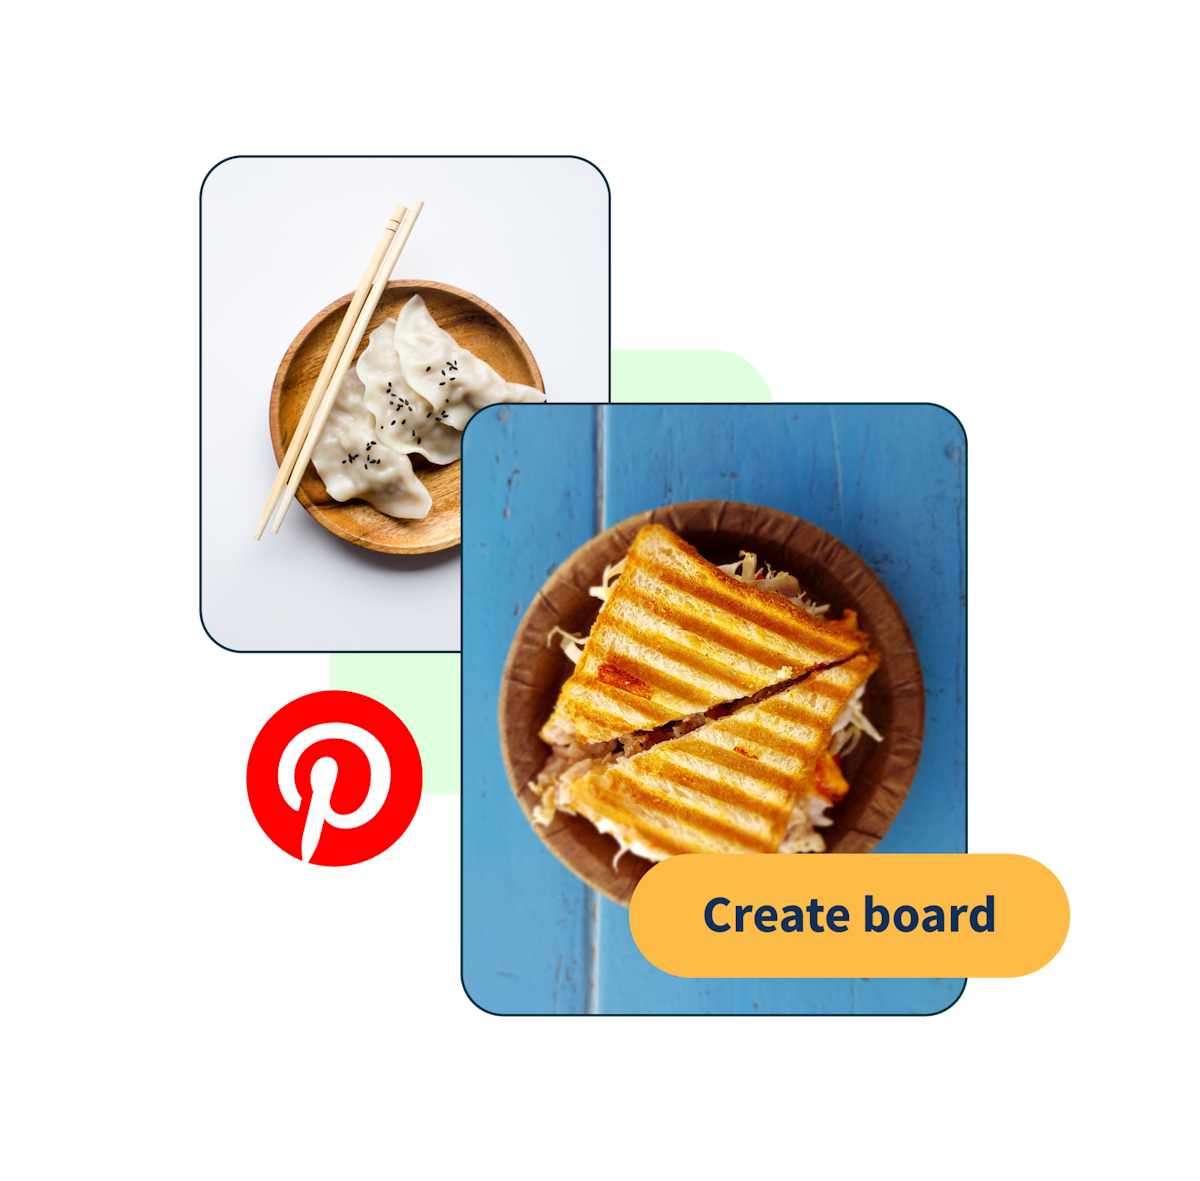 Bild von einem Sandwich und Knödeln mit einem Pop up-Button „Board erstellen“